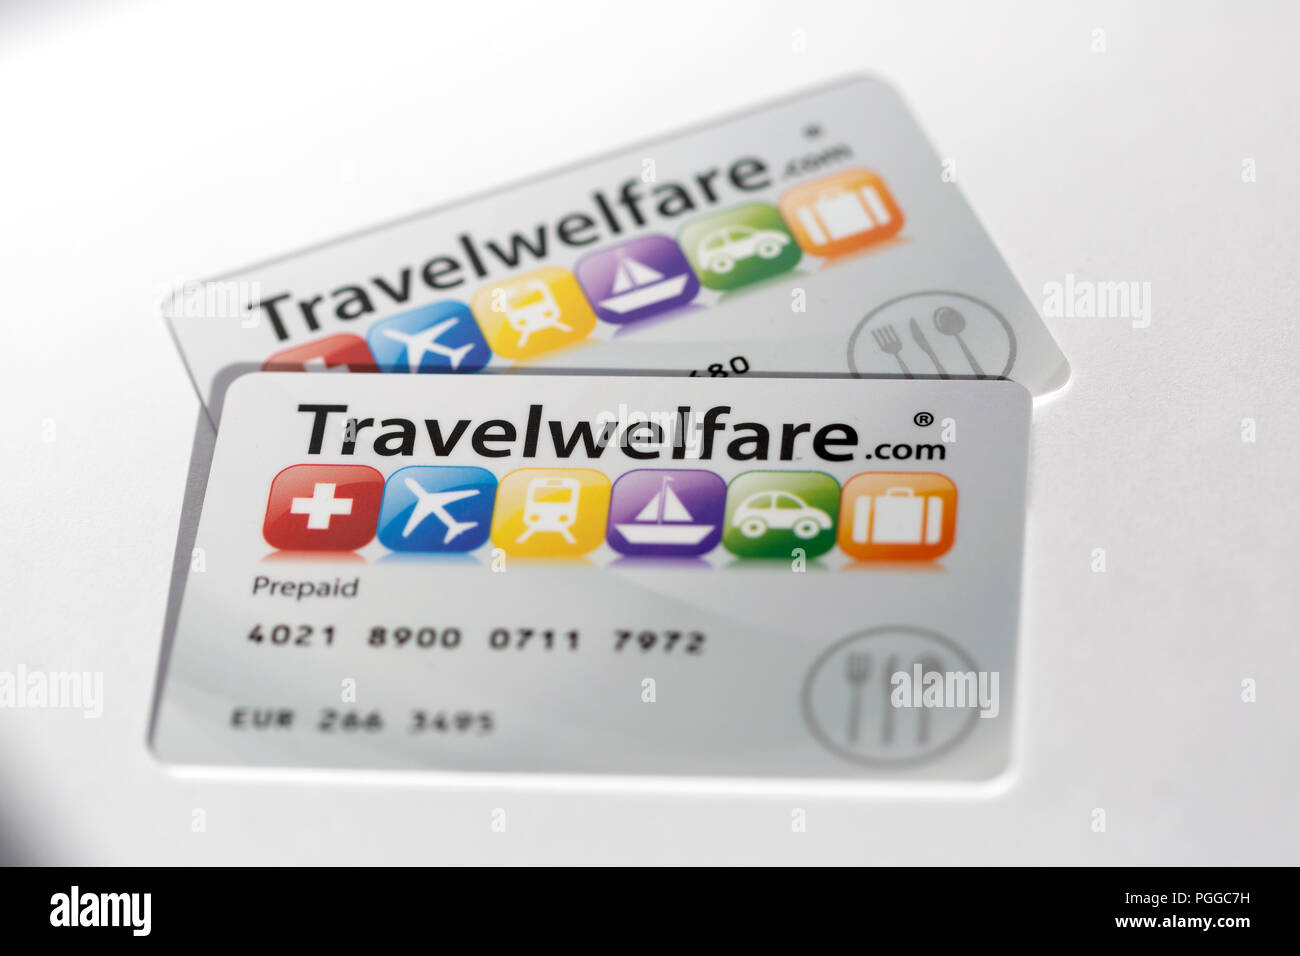 Bien-être voyages bien-être Voyages.Les cartes VISA fournir 'approuvé' style carte-cadeau vouchers incorporant la technologie de bande magnétique. Banque D'Images